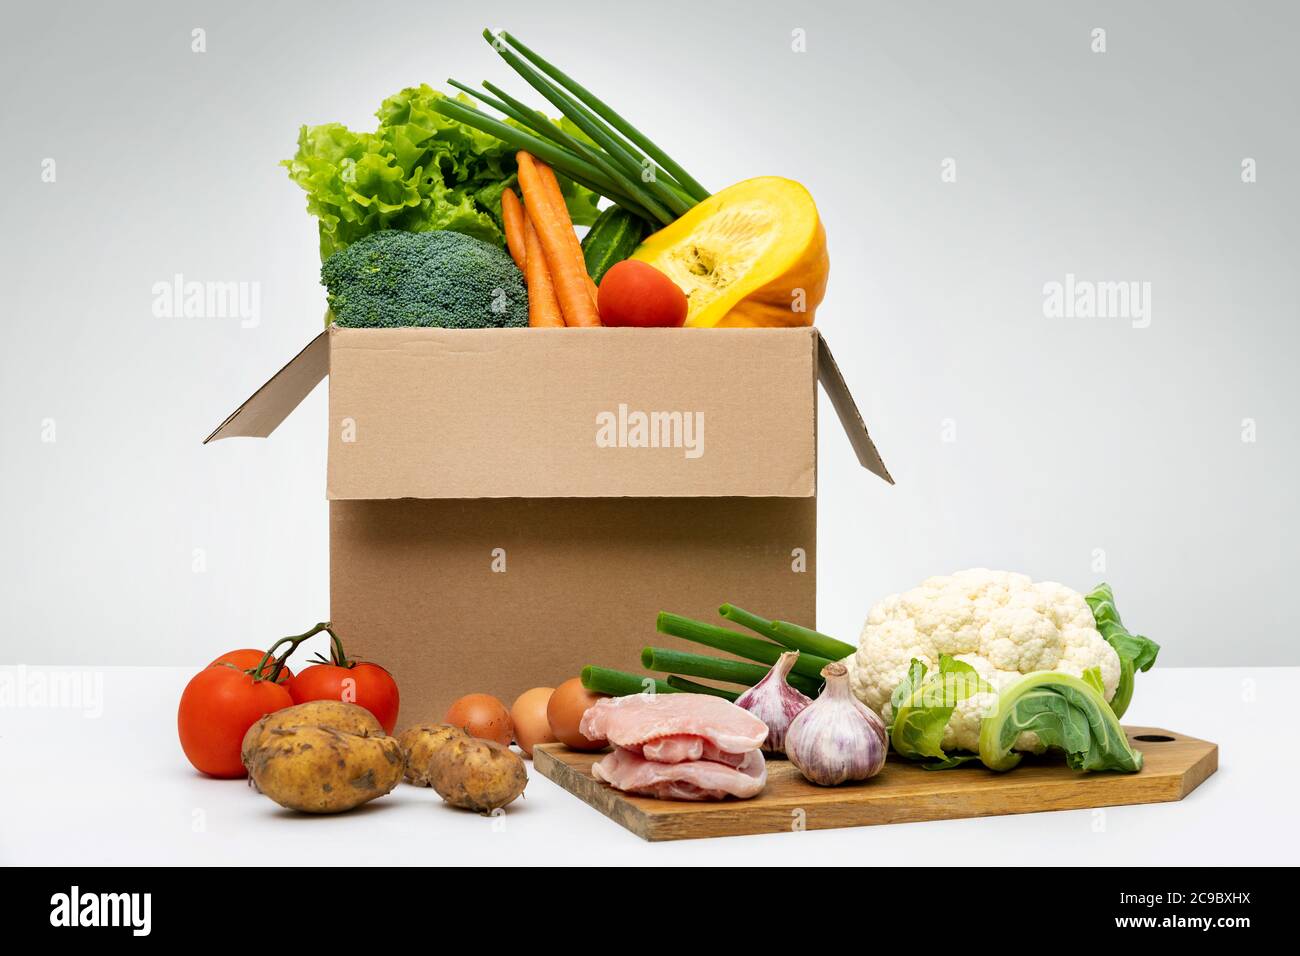 cibo agricolo fresco biologico - gruppo di verdure uova e carne in scatola di cartone Foto Stock